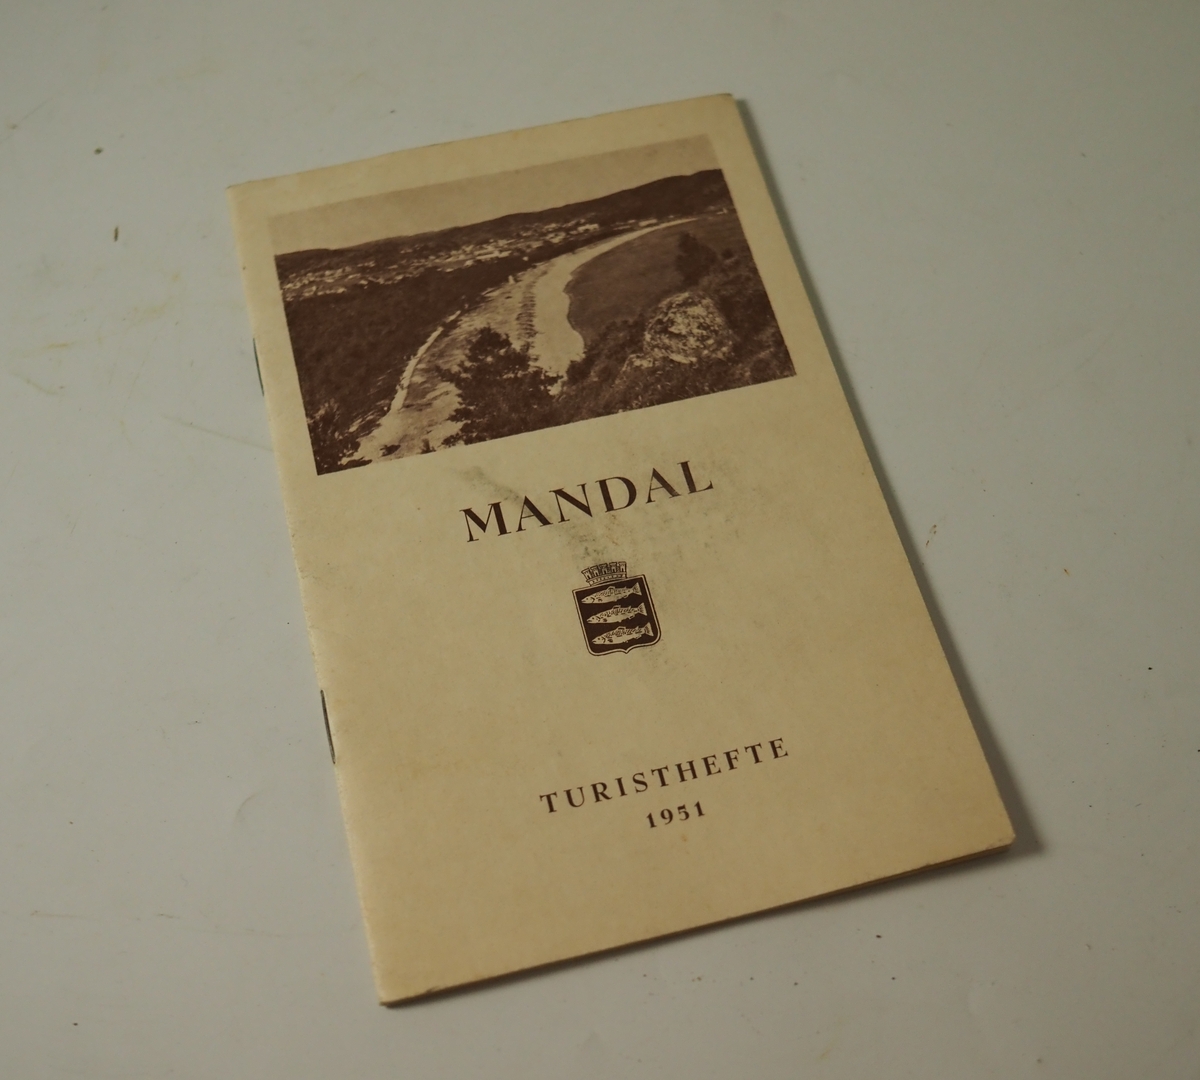 Turisthefte for Mandal by fra 1951. Innholder informasjon om Mandal, kart over byen og annonser for noen av byens bedrifter.